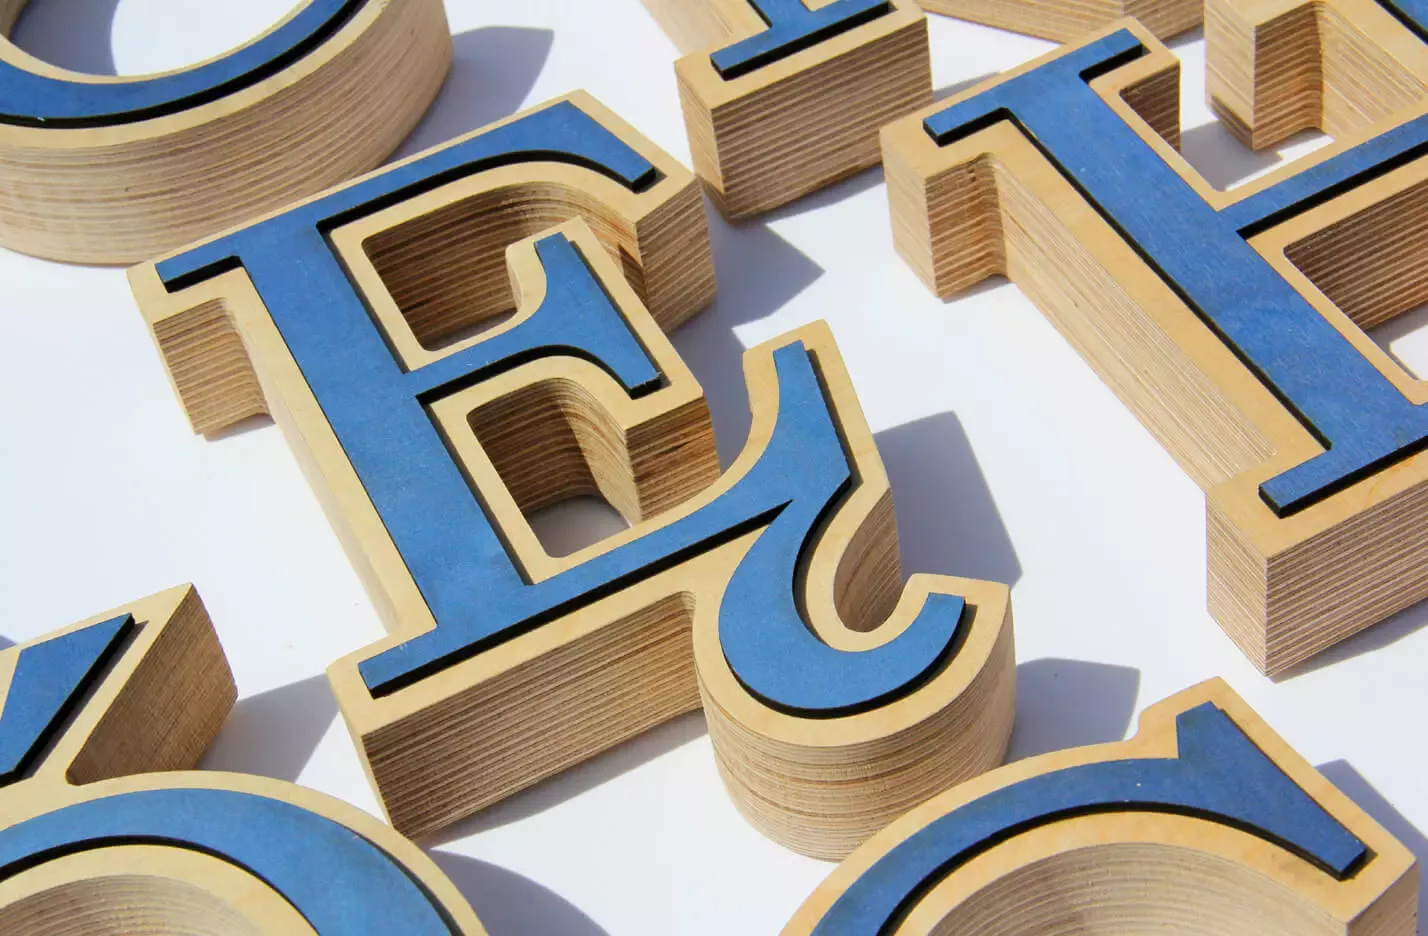 Hölzernes Alphabet - dekorative Holzbuchstaben in blau